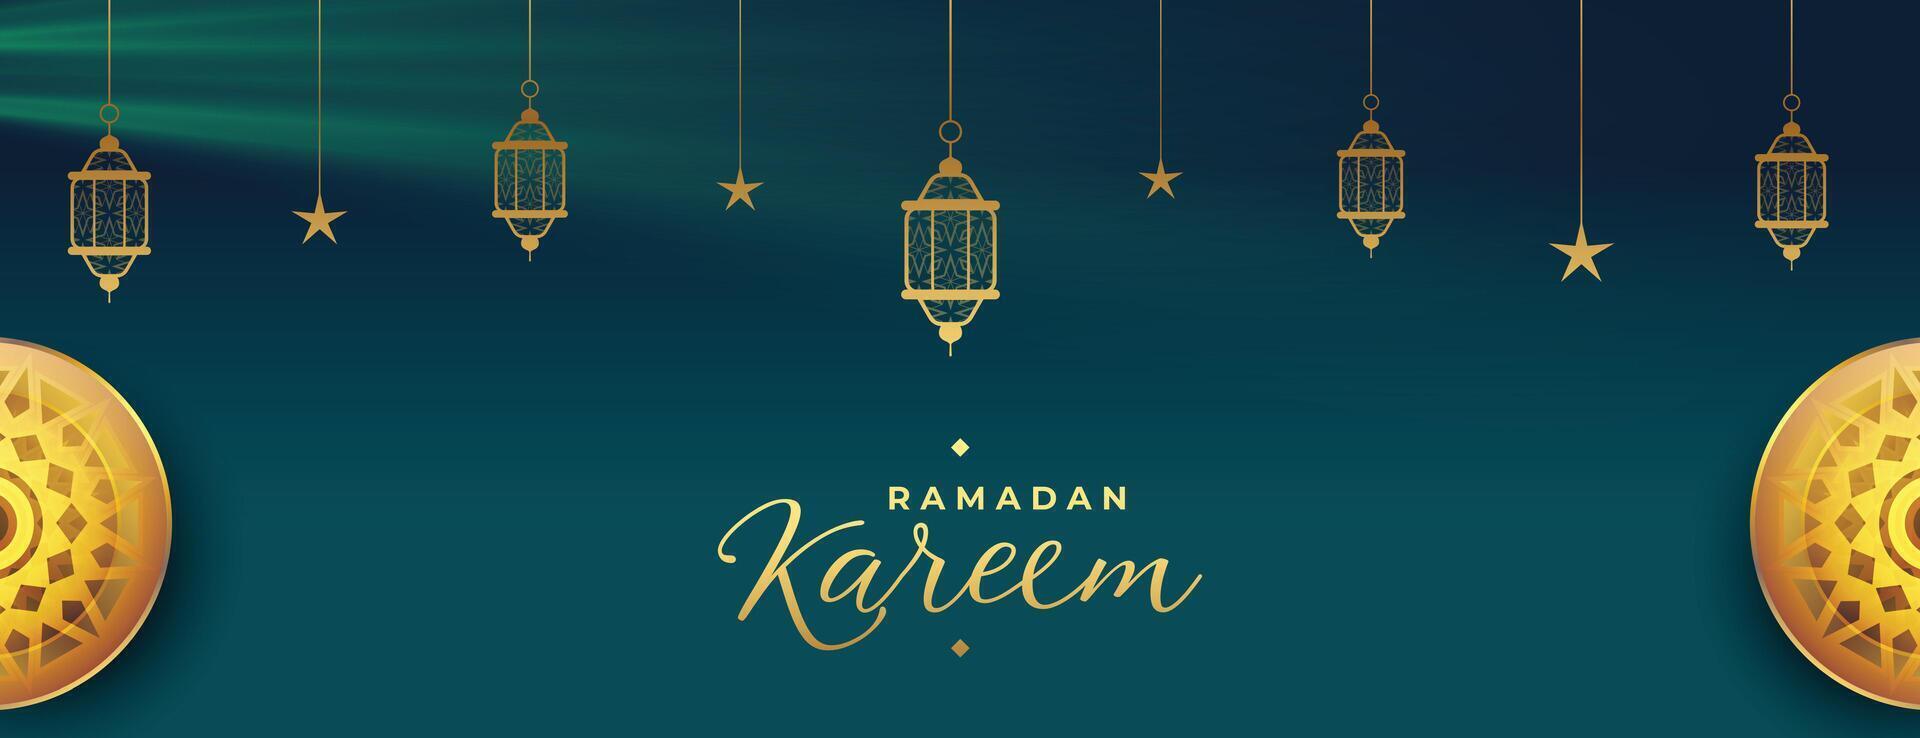 Ramadan kareem saisonal Banner mit Arabisch Dekoration vektor